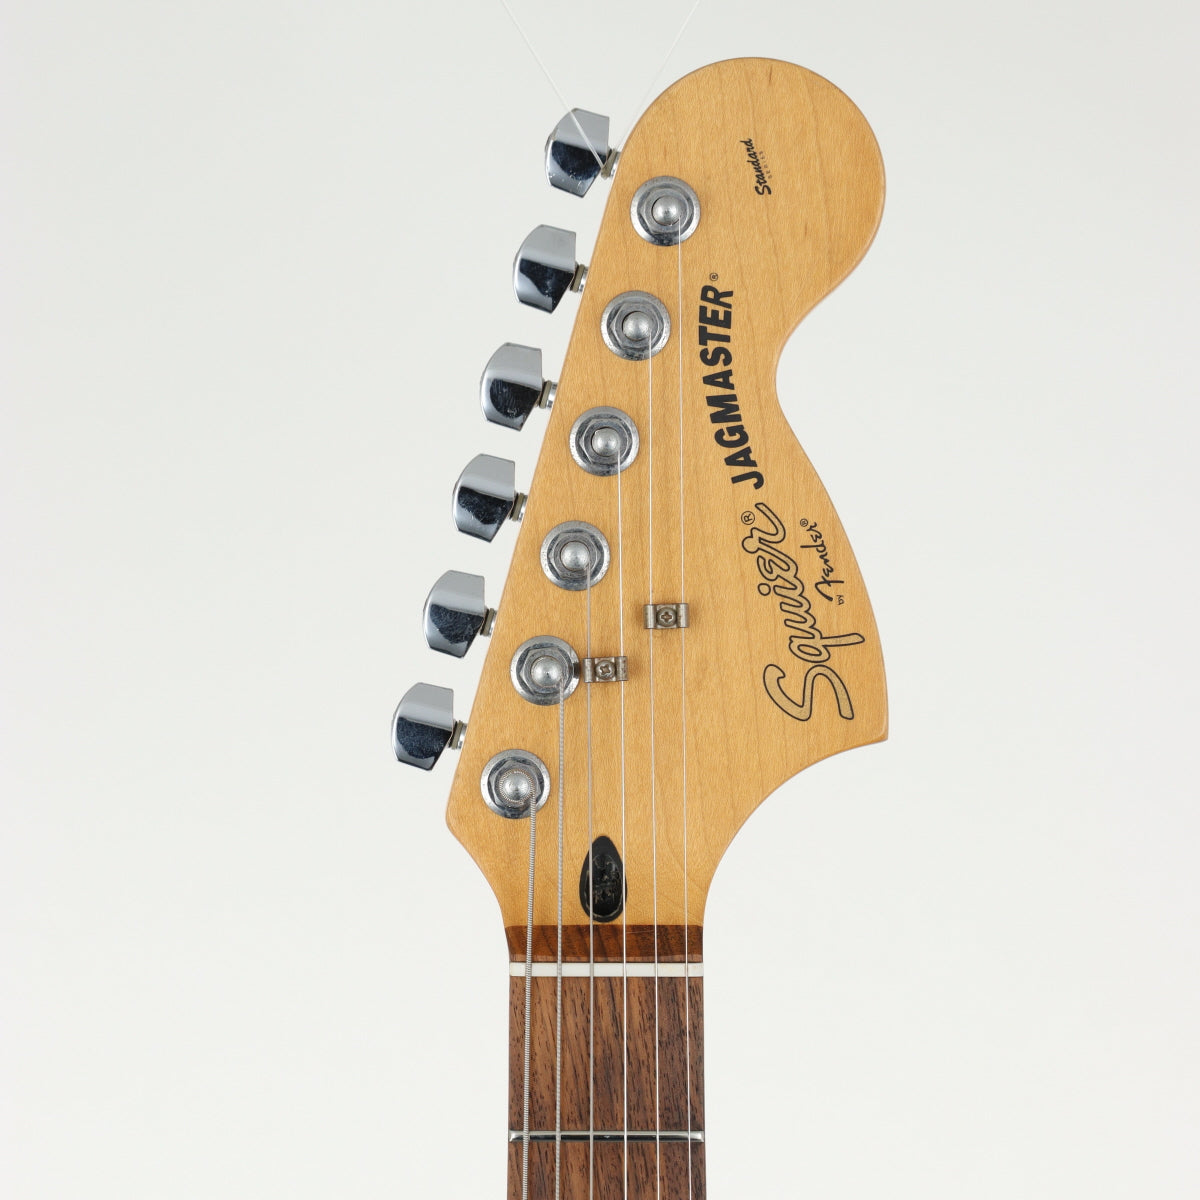 [SN CY41212053] USED Squier by Fender Squier / Standard Series Jagmaster Black [20]